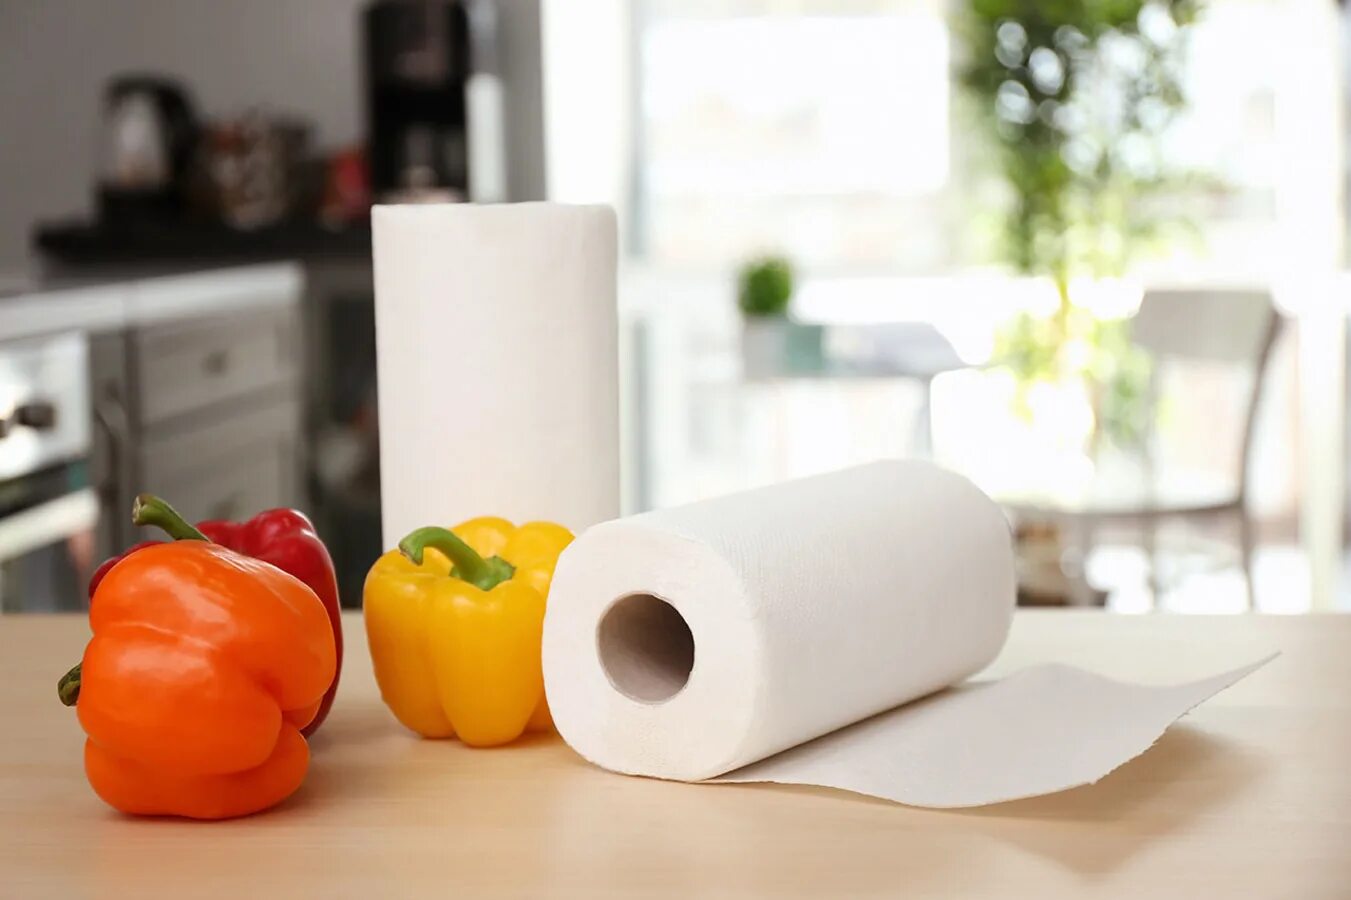 Моющие бумажные полотенца. Бумажные полотенца. Бумажные полотенца на кухне. Бумажные полотенца Kitchen. Paper Towel бумажные полотенца.